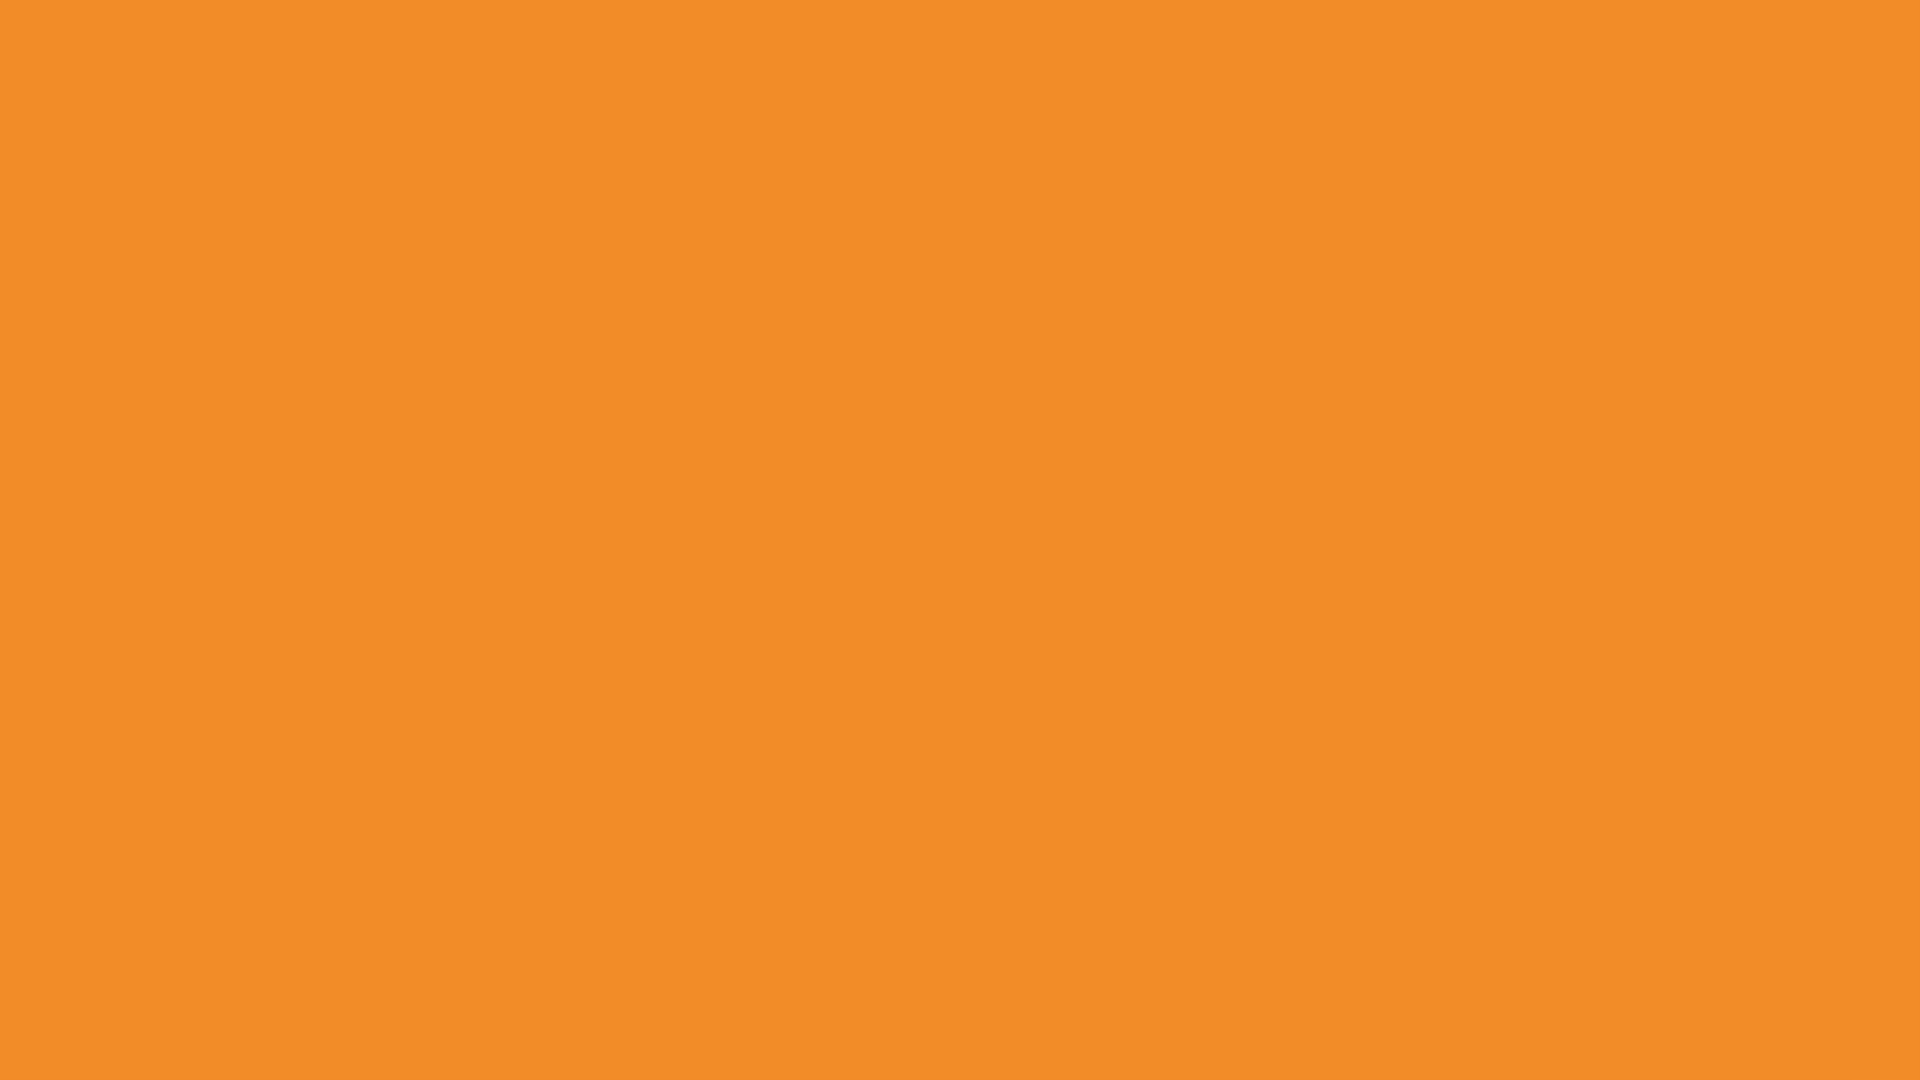 Đã bao giờ bạn muốn biết sự khác biệt giữa màu cam Cadmium và các màu sắc khác chưa? Hãy nhấn vào hình ảnh của chúng tôi để khám phá mã màu HTML và tìm hiểu sự thật thú vị về màu cam này!